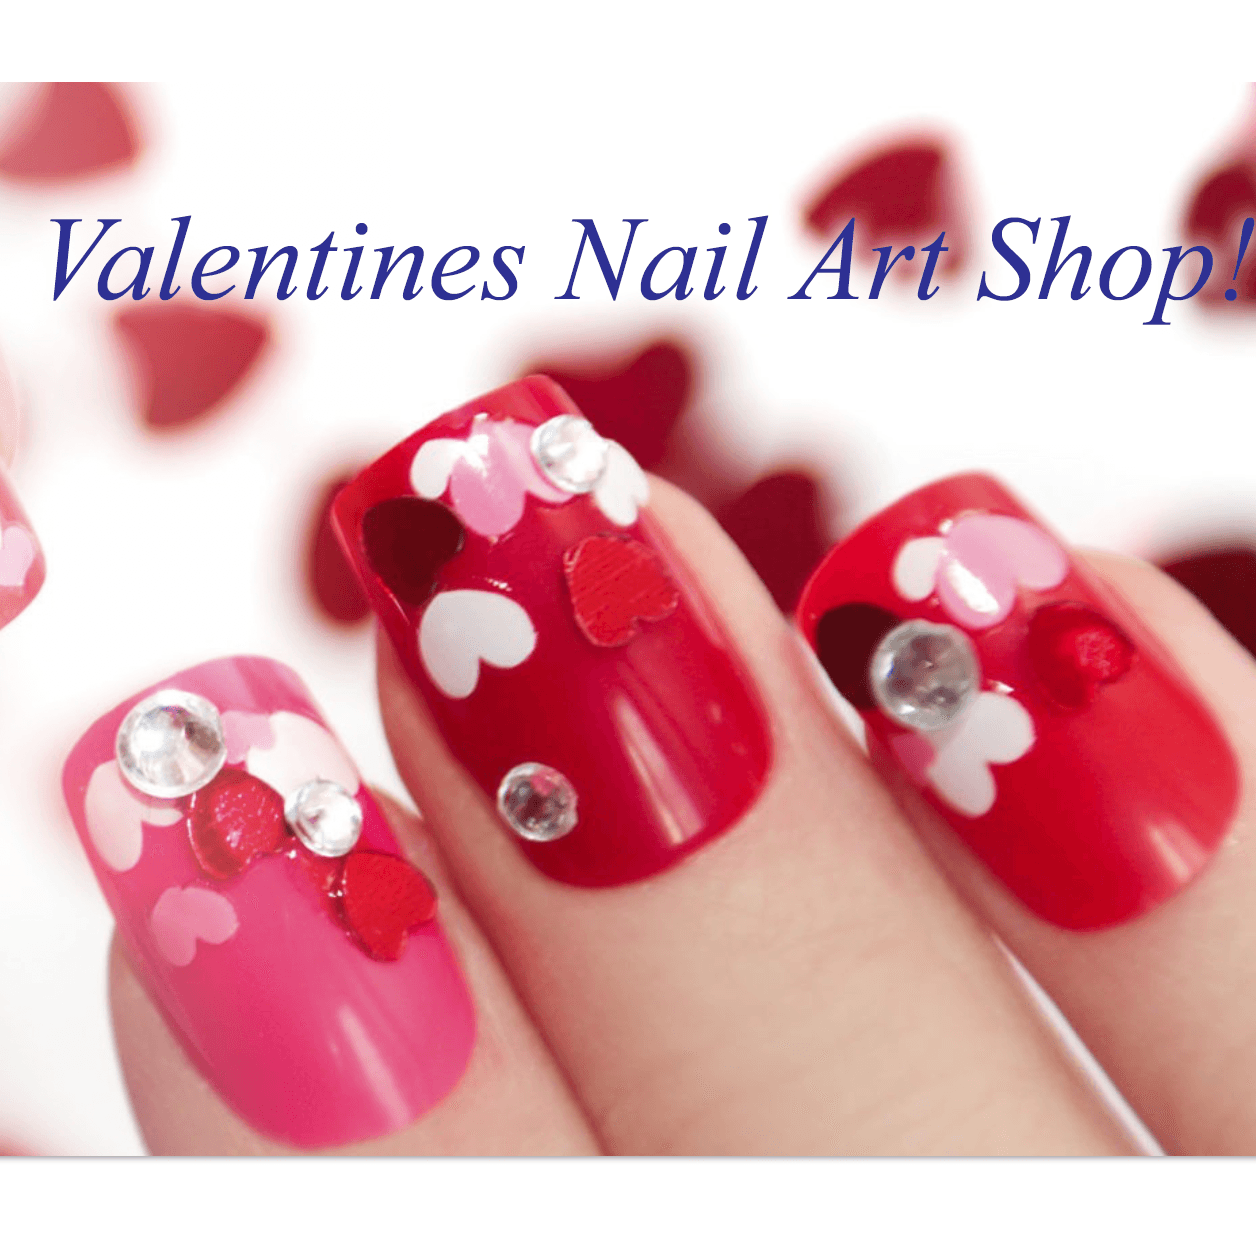 Valentine's Nail Art Shop - Gel Essentialz